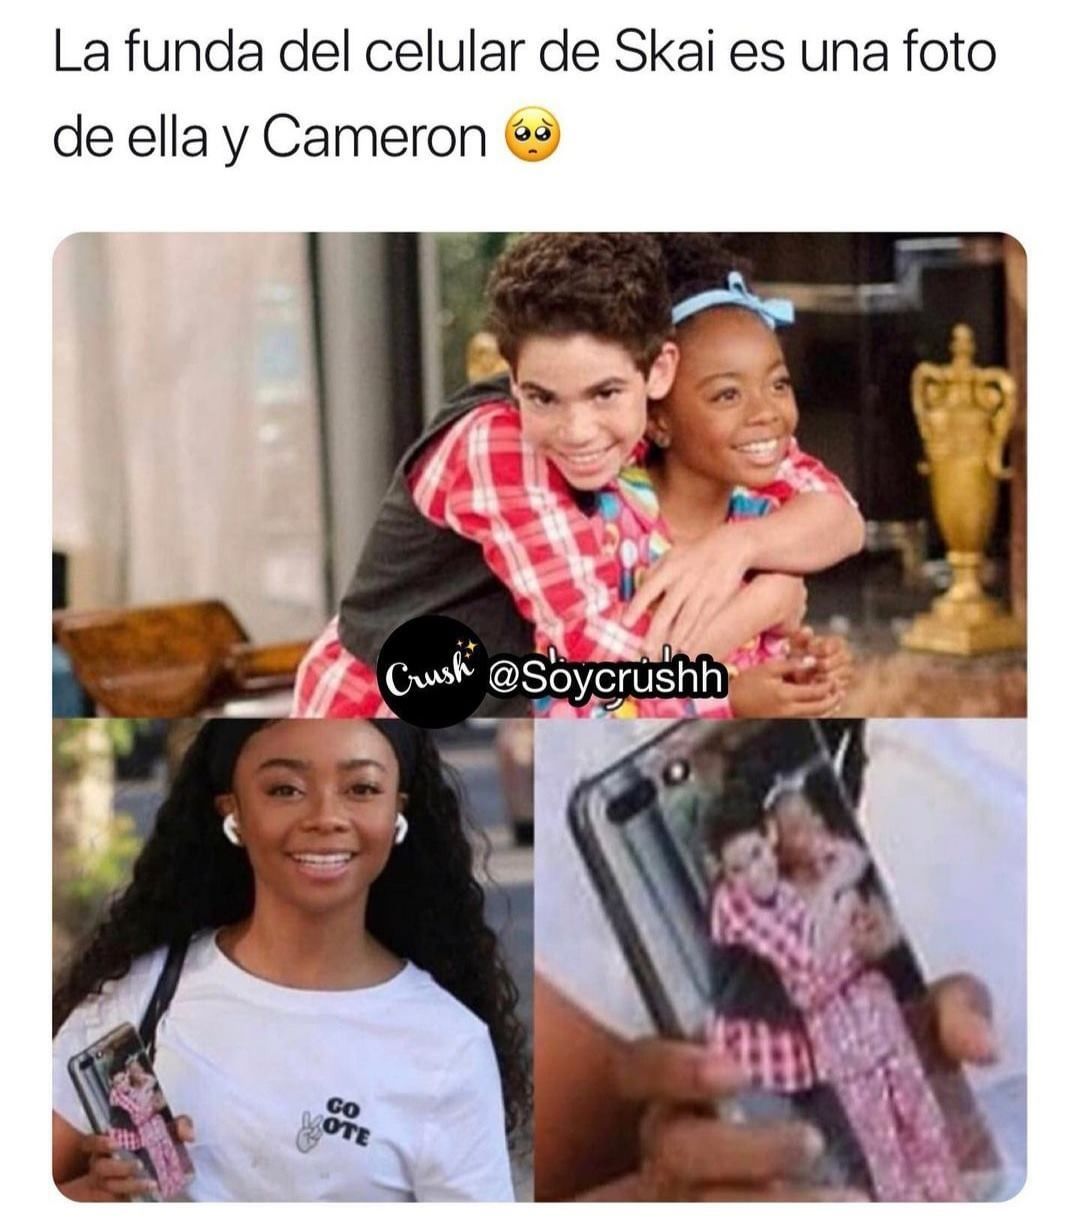 La funda del celular de Skai es una foto de ella y Cameron.